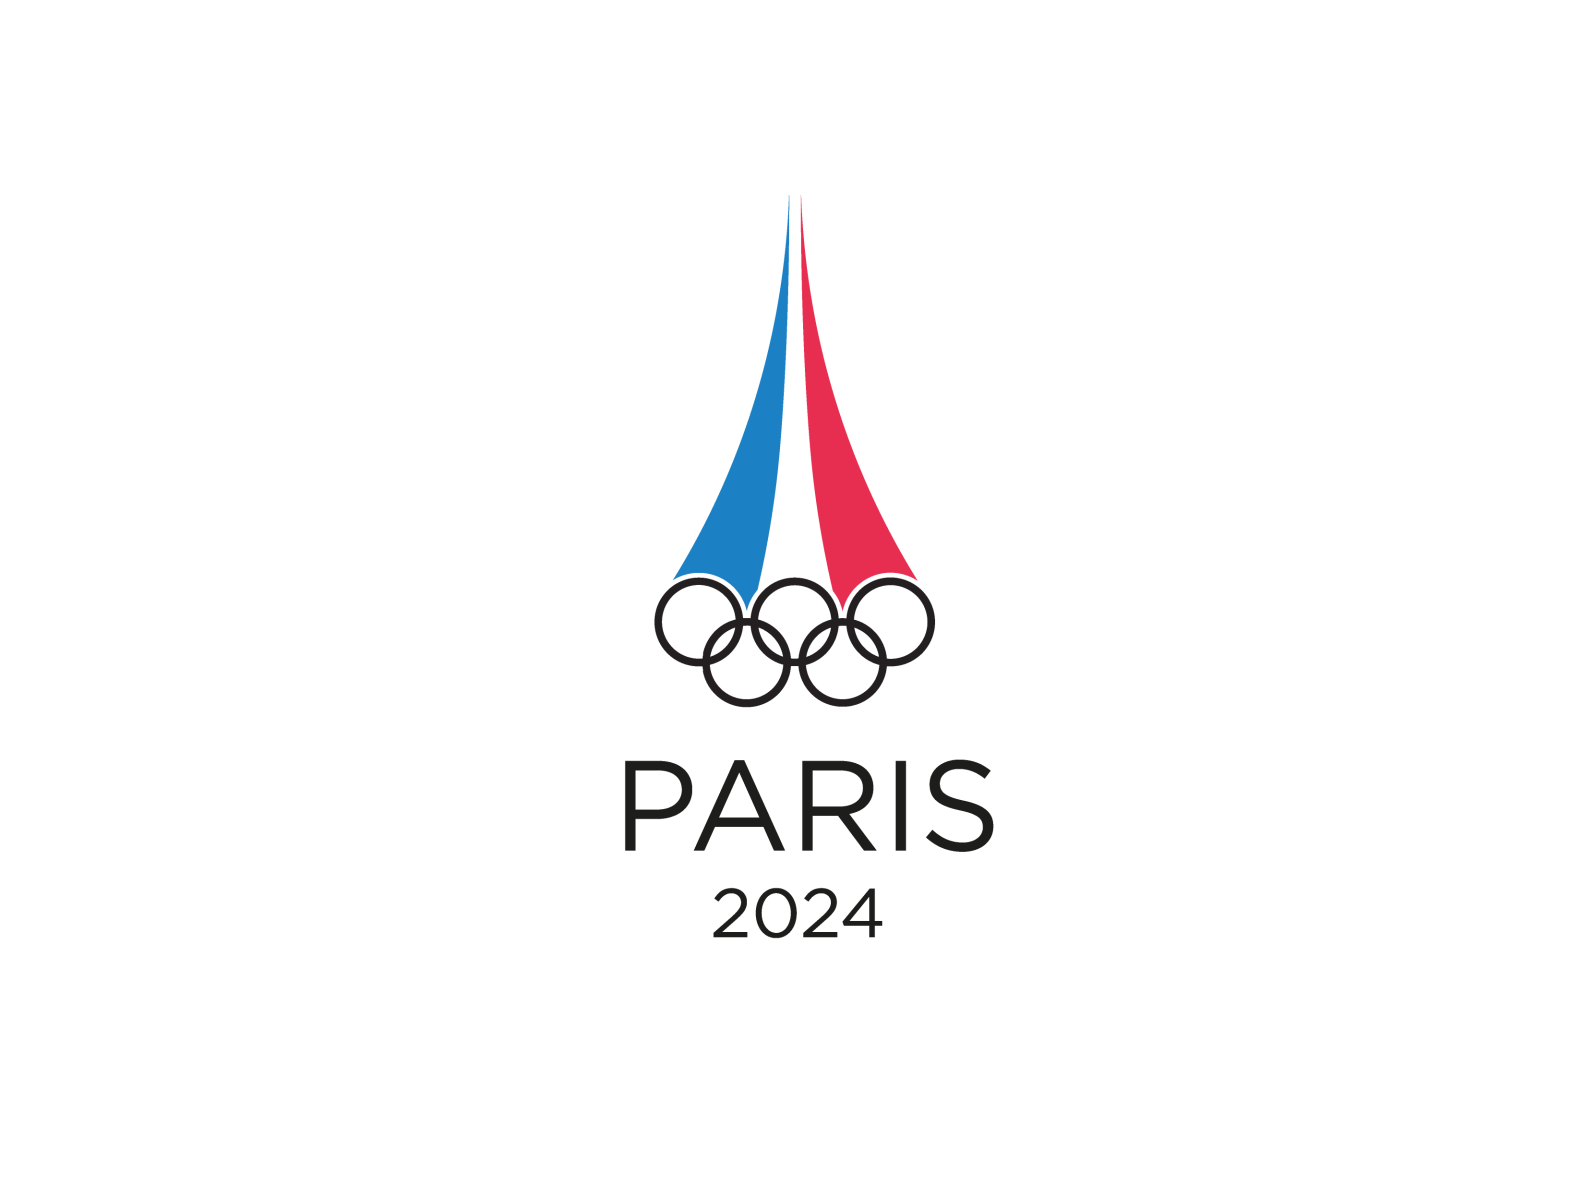 Igra 2024. Олимпийские игры в Париже 2024. Paris 2024 логотип.